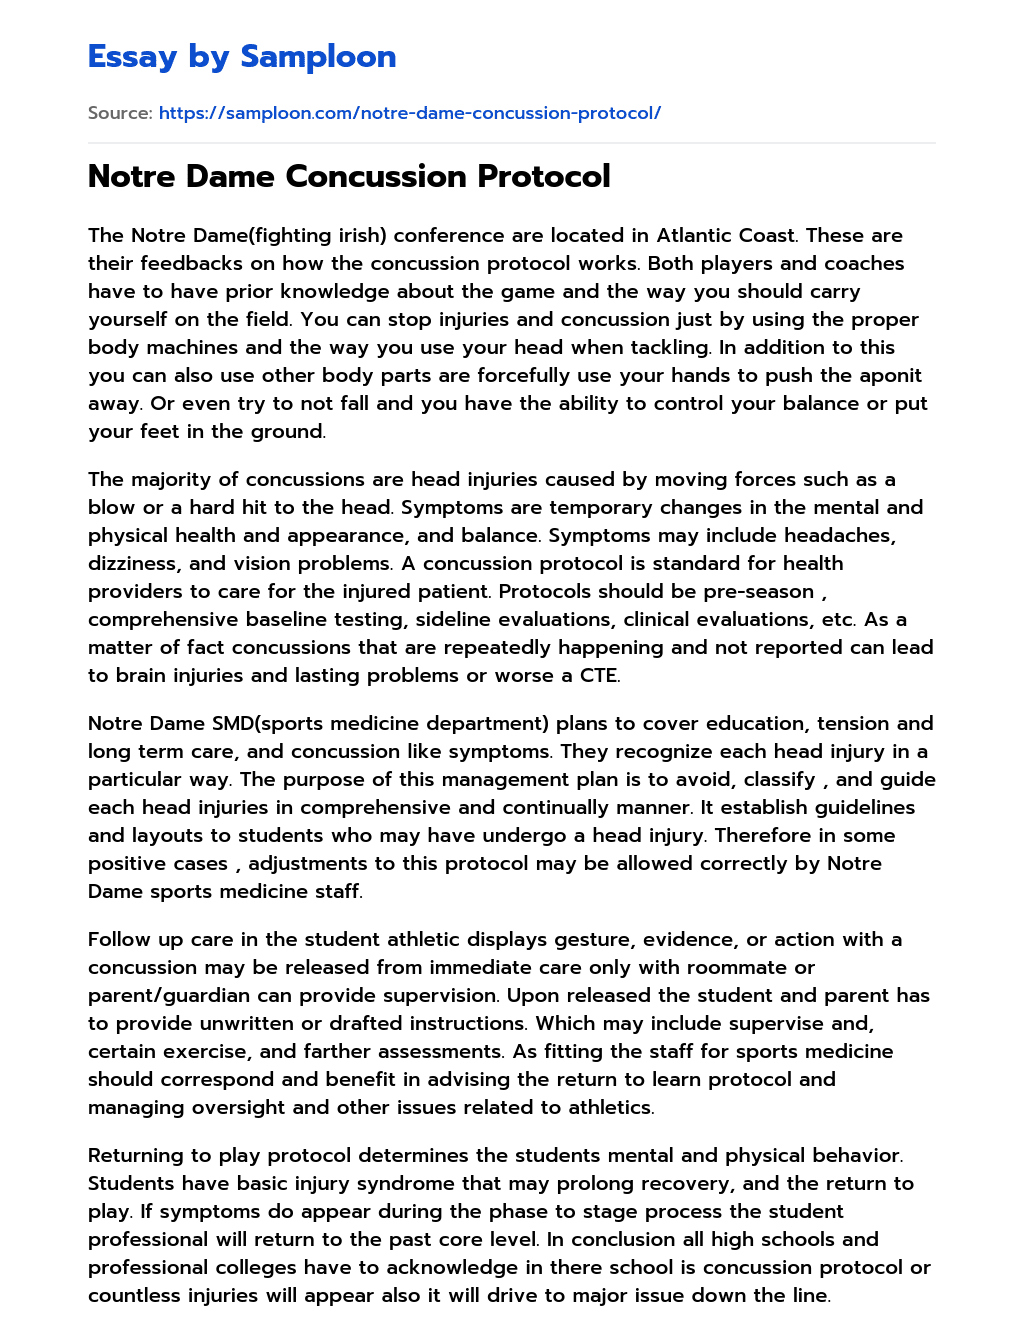 Notre Dame Concussion Protocol essay